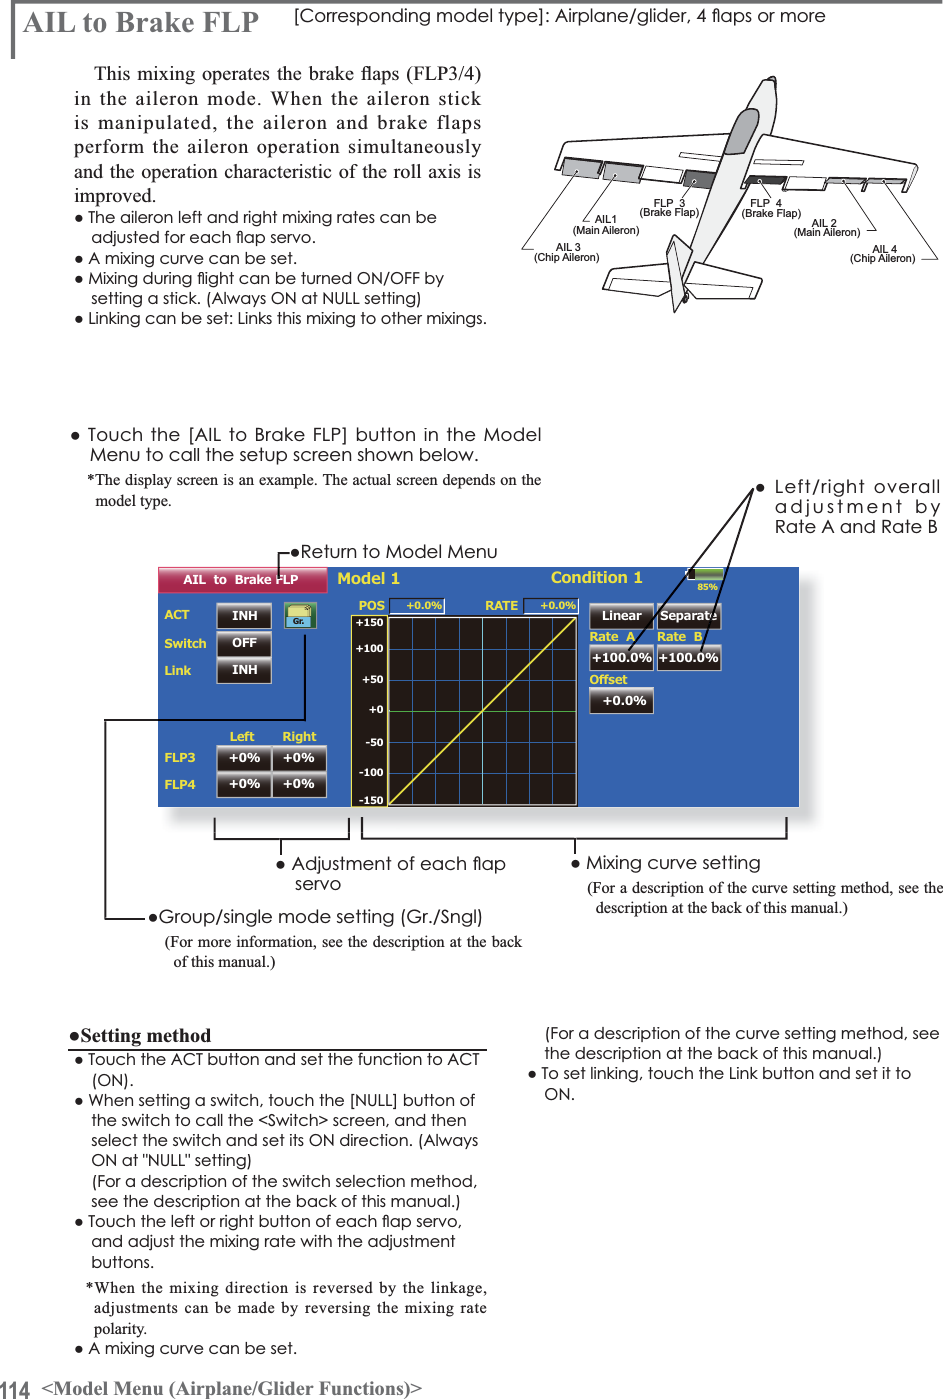 114 &lt;Model Menu (Airplane/Glider Functions)&gt;AIL 3(Chip Aileron) AIL 4(Chip Aileron)AIL1(Main Aileron) AIL 2(Main Aileron)FLP  3(Brake Flap) FLP  4(Brake Flap)85%AIL  to  Brake FLPINH POS +0.0%SwitchLinkACTLeft RightLinear Separate+100.0% +100.0%Model 1 Condition 1Gr. +150+100+50+0-50-150-100RATERate  A+0.0%2íVHWRate  B+0.0%INHOFFFLP3FLP4+0% +0%+0% +0%ŏ5HWXUQWR0RGHO0HQX$,/WR%UDNH)/3 &gt;&amp;RUUHVSRQGLQJPRGHOW\SH@$LUSODQHJOLGHUÁDSVRUPRUH7KLVPL[LQJRSHUDWHVWKHEUDNHÀDSV)/3in the aileron mode. When the aileron stick is manipulated, the aileron and brake flaps perform the aileron operation simultaneously and the operation characteristic of the roll axis is improved.ŏ7KHDLOHURQOHIWDQGULJKWPL[LQJUDWHVFDQEHDGMXVWHGIRUHDFKÁDSVHUYRŏ$PL[LQJFXUYHFDQEHVHWŏ0L[LQJGXULQJÁLJKWFDQEHWXUQHG212))E\VHWWLQJDVWLFN$OZD\V21DW18//VHWWLQJŏ/LQNLQJFDQEHVHW/LQNVWKLVPL[LQJWRRWKHUPL[LQJVŏ7RXFKWKH&gt;$,/WR%UDNH)/3@EXWWRQLQWKH0RGHOMenu to call the setup screen shown below.*The display screen is an example. The actual screen depends on the model type.ŏ0L[LQJFXUYHVHWWLQJ(For a description of the curve setting method, see the description at the back of this manual.)ŏ$GMXVWPHQWRIHDFKÁDSservoŏ*URXSVLQJOHPRGHVHWWLQJ*U6QJO(For more information, see the description at the back of this manual.)ŏ/HIWULJKWRYHUDOOadjustment by5DWH$DQG5DWH%Ɣ6HWWLQJPHWKRGŏ7RXFKWKH$&amp;7EXWWRQDQGVHWWKHIXQFWLRQWR$&amp;721ŏ:KHQVHWWLQJDVZLWFKWRXFKWKH&gt;18//@EXWWRQRIthe switch to call the &lt;Switch&gt; screen, and then VHOHFWWKHVZLWFKDQGVHWLWV21GLUHFWLRQ$OZD\V21DW18//VHWWLQJ(For a description of the switch selection method, see the description at the back of this manual.)ŏ7RXFKWKHOHIWRUULJKWEXWWRQRIHDFKÁDSVHUYRand adjust the mixing rate with the adjustment buttons.*When the mixing direction is reversed by the linkage, adjustments can be made by reversing the mixing ratepolarity.ŏ$PL[LQJFXUYHFDQEHVHW(For a description of the curve setting method, see the description at the back of this manual.)ŏ7RVHWOLQNLQJWRXFKWKH/LQNEXWWRQDQGVHWLWWR21A